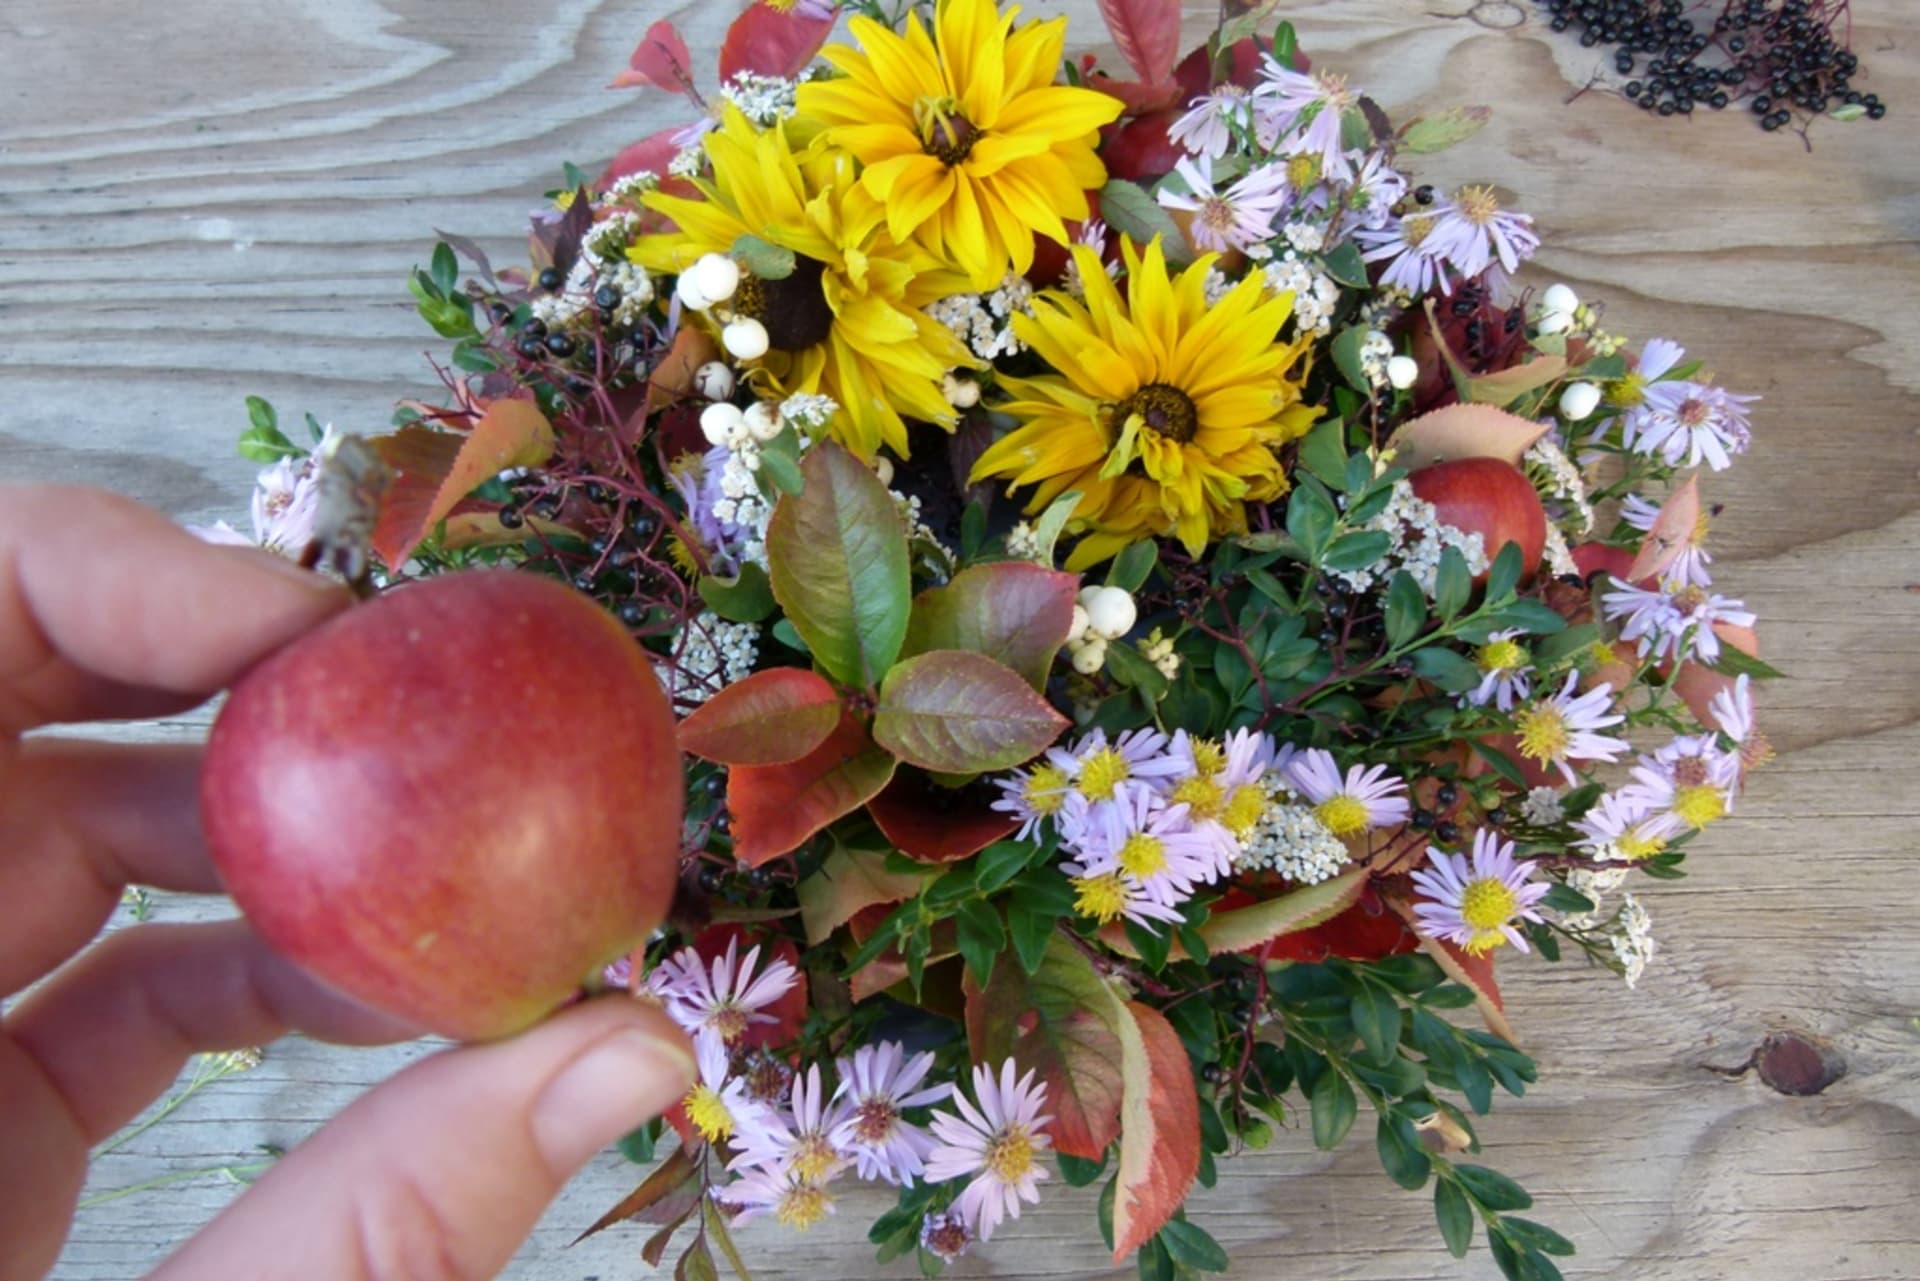 Vytvořte si barevný věnec z podzimních květin a plodů